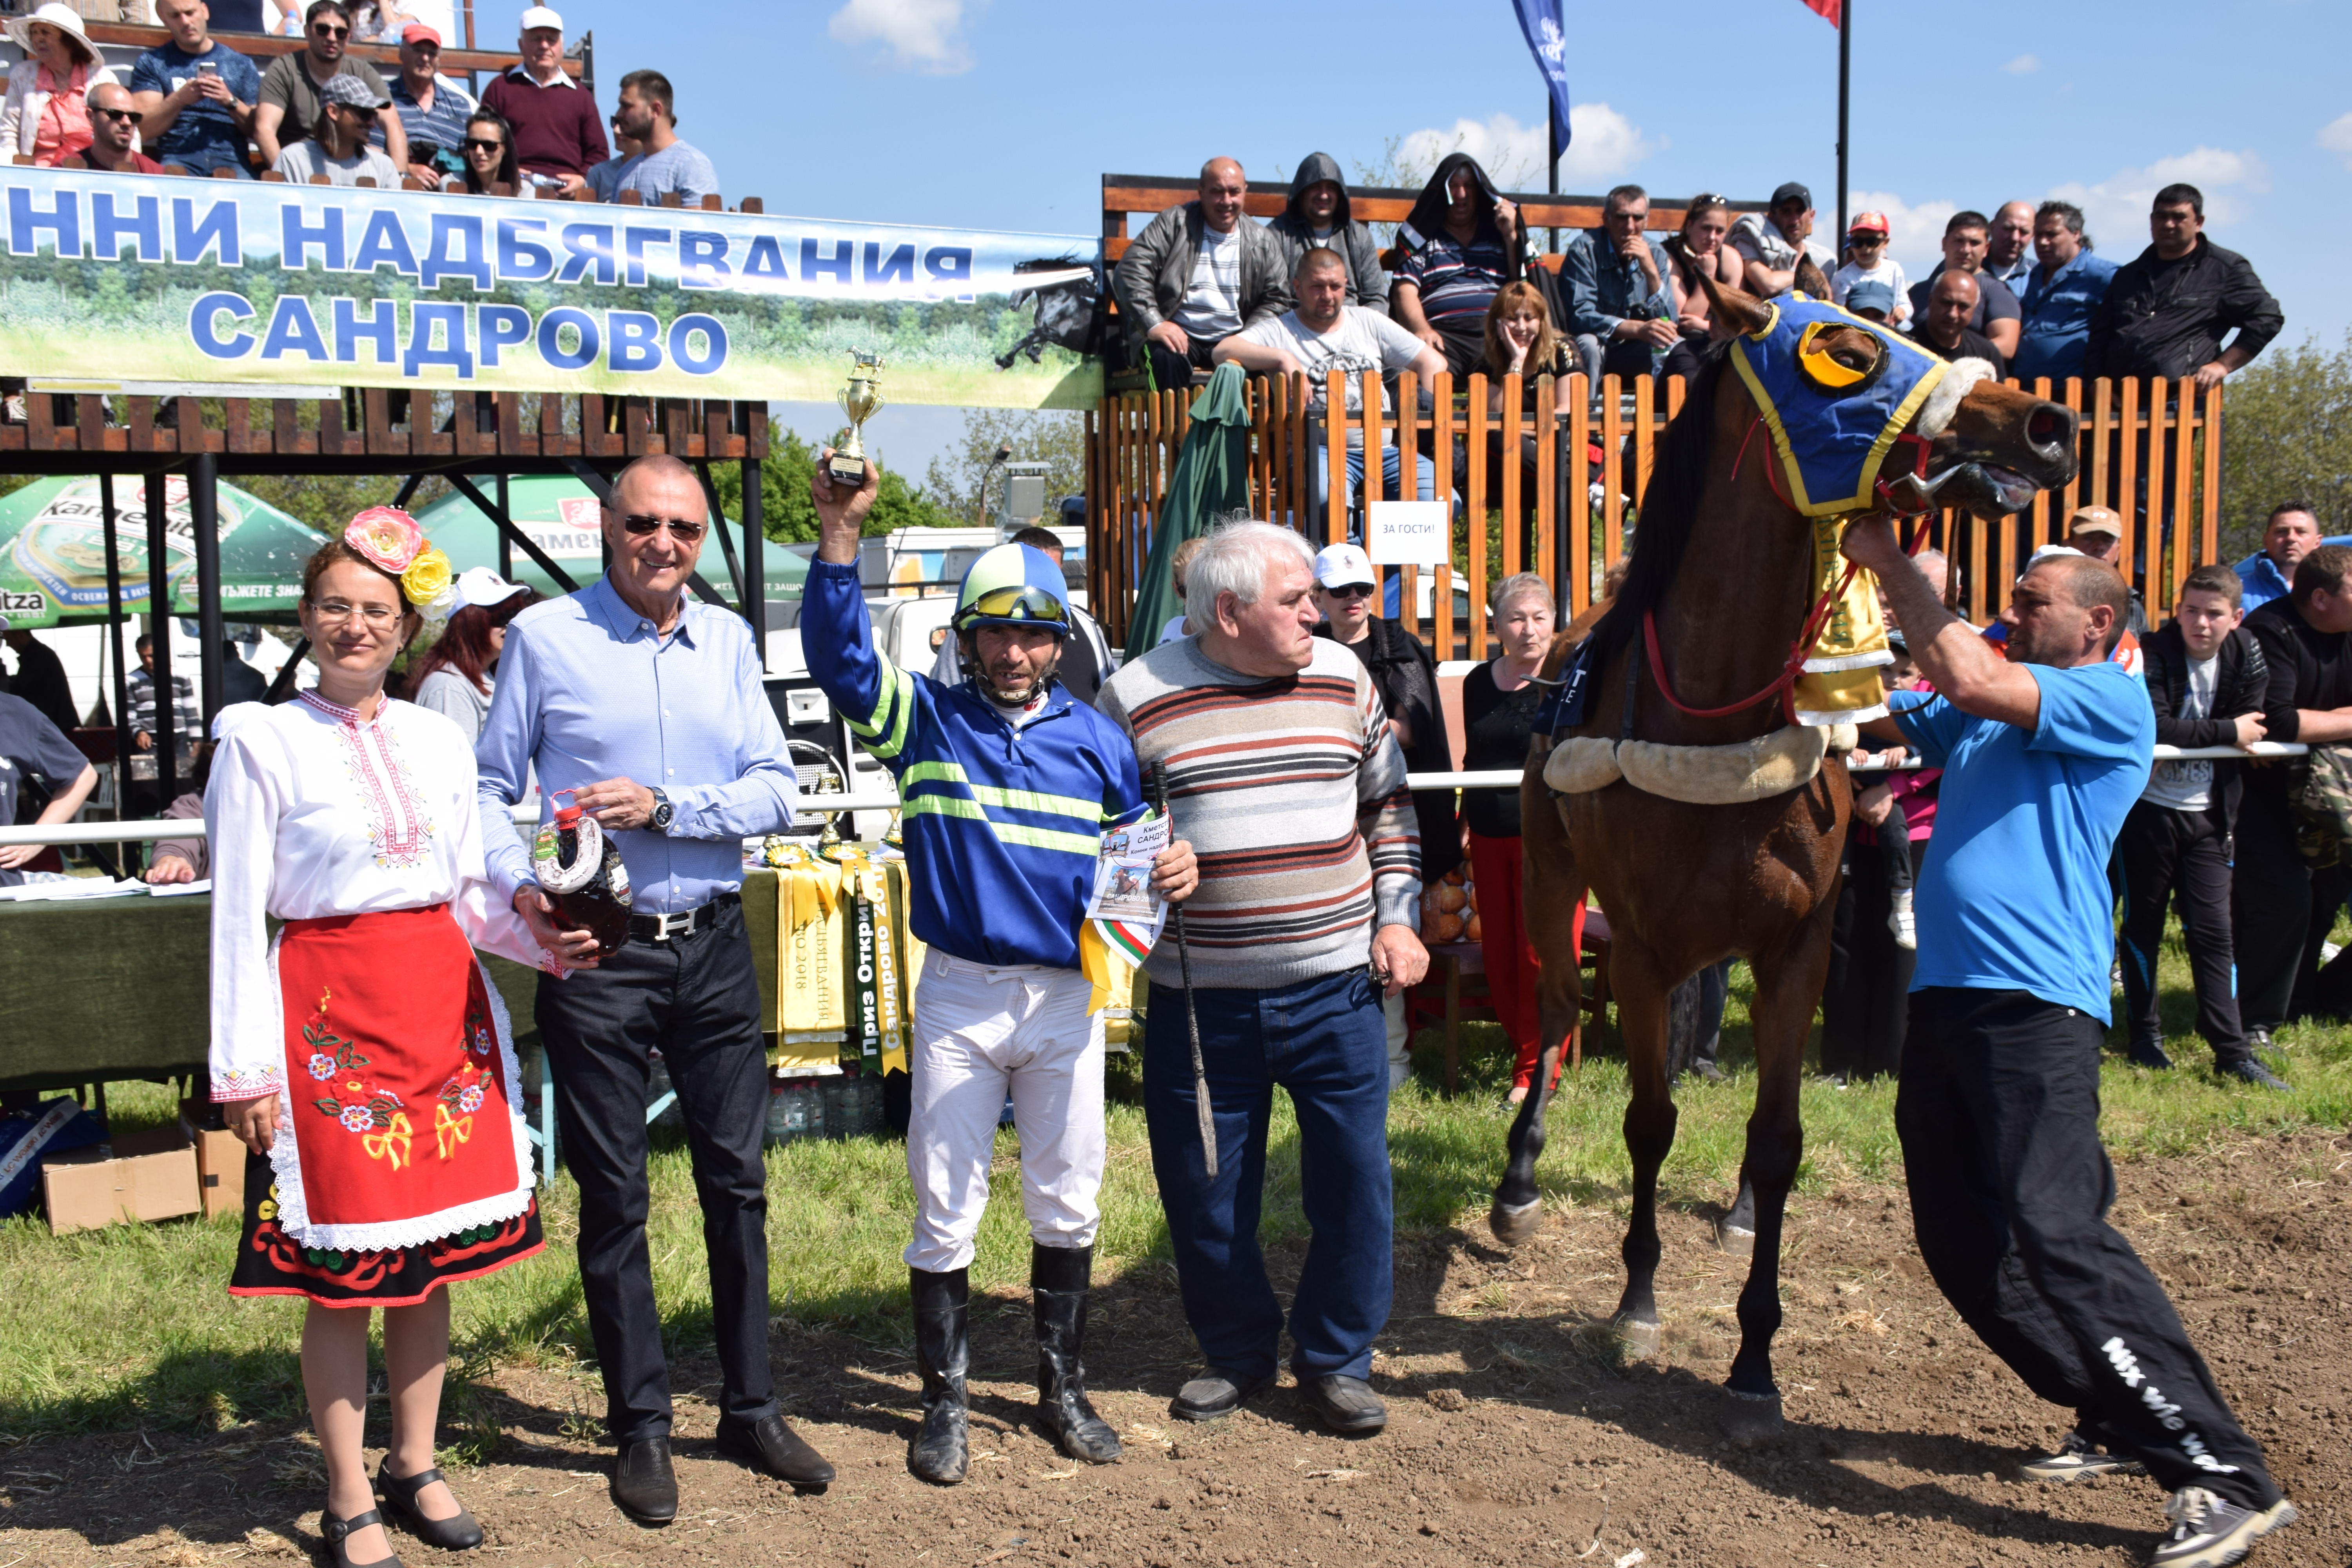 80 елитни коне се състезаваха в Сандрово на ежегодните спортни надбягвания /допълнена/